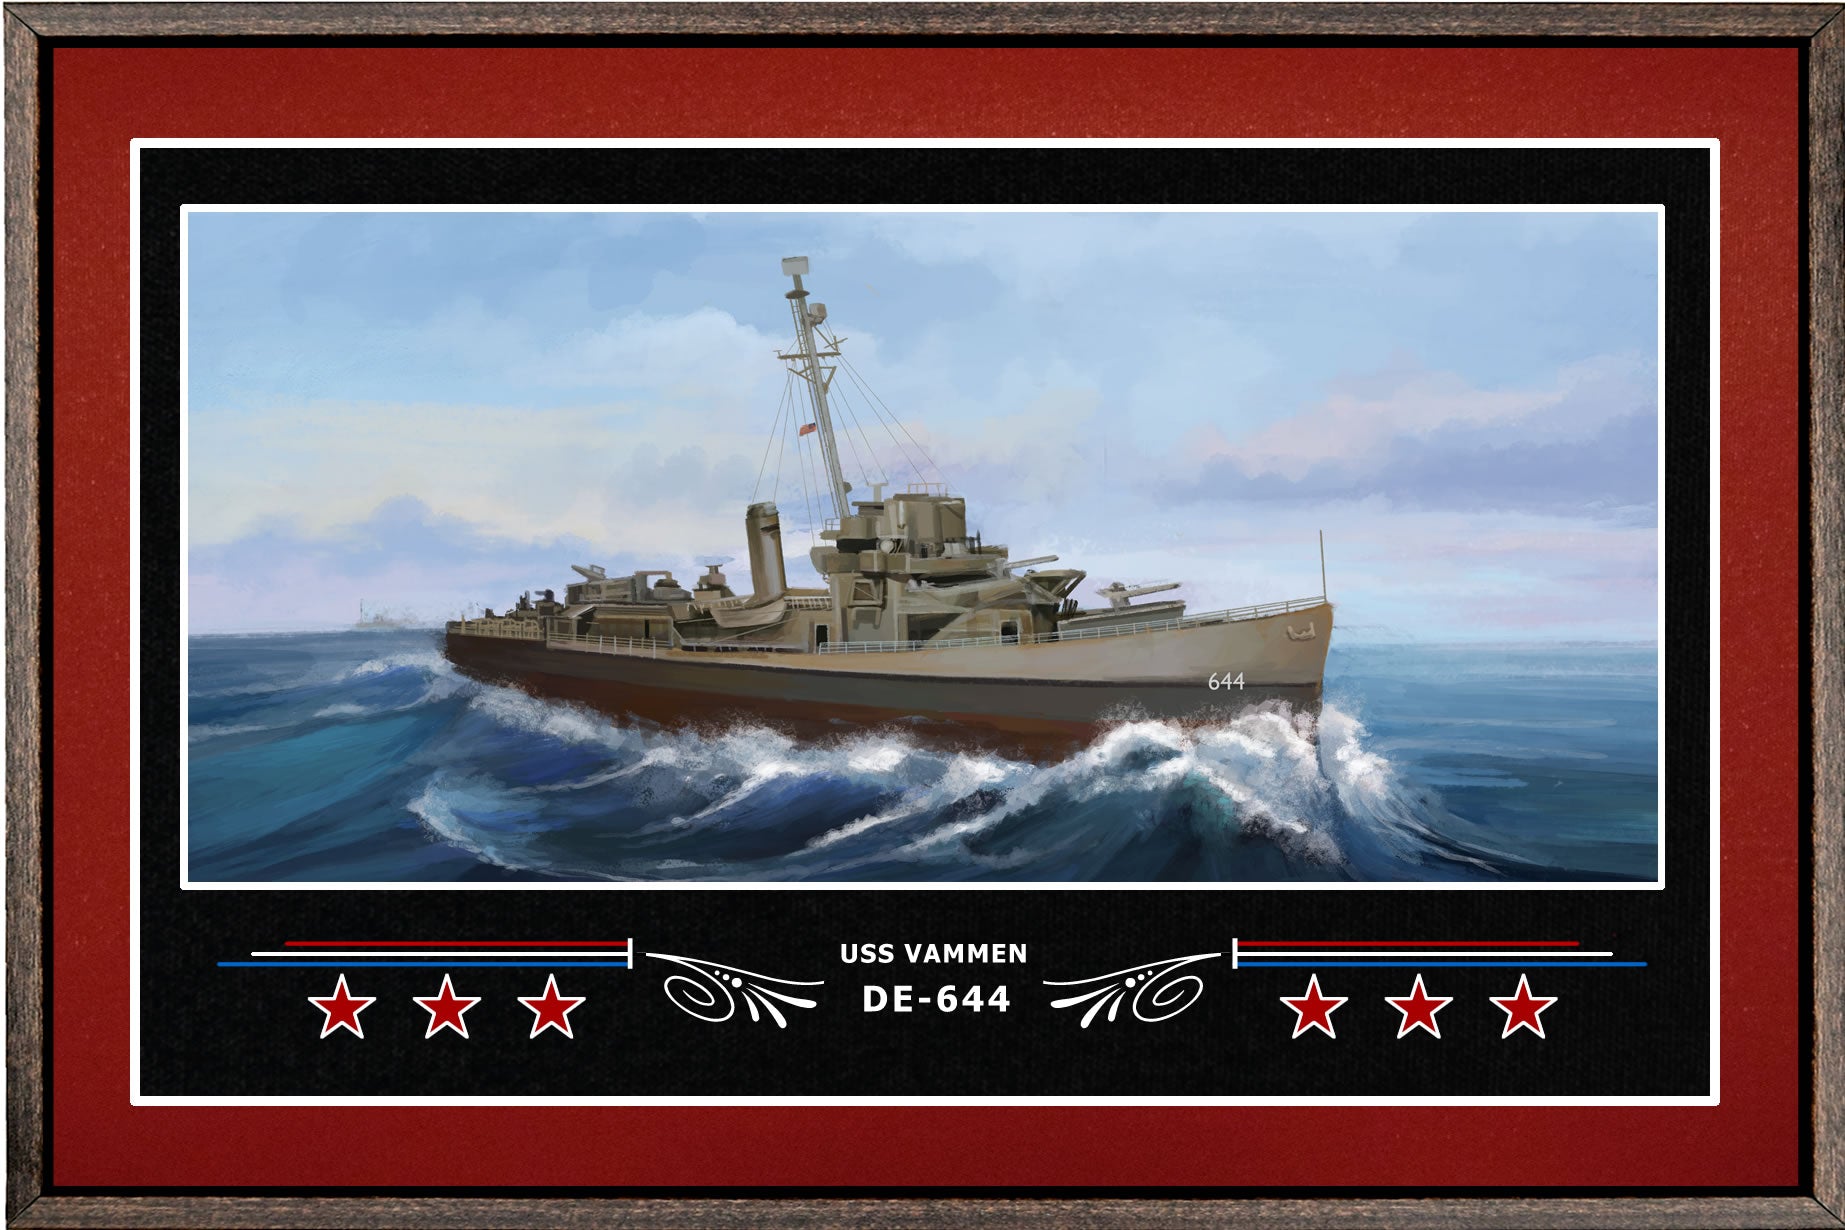 USS VAMMEN DE 644 BOX FRAMED CANVAS ART BURGUNDY